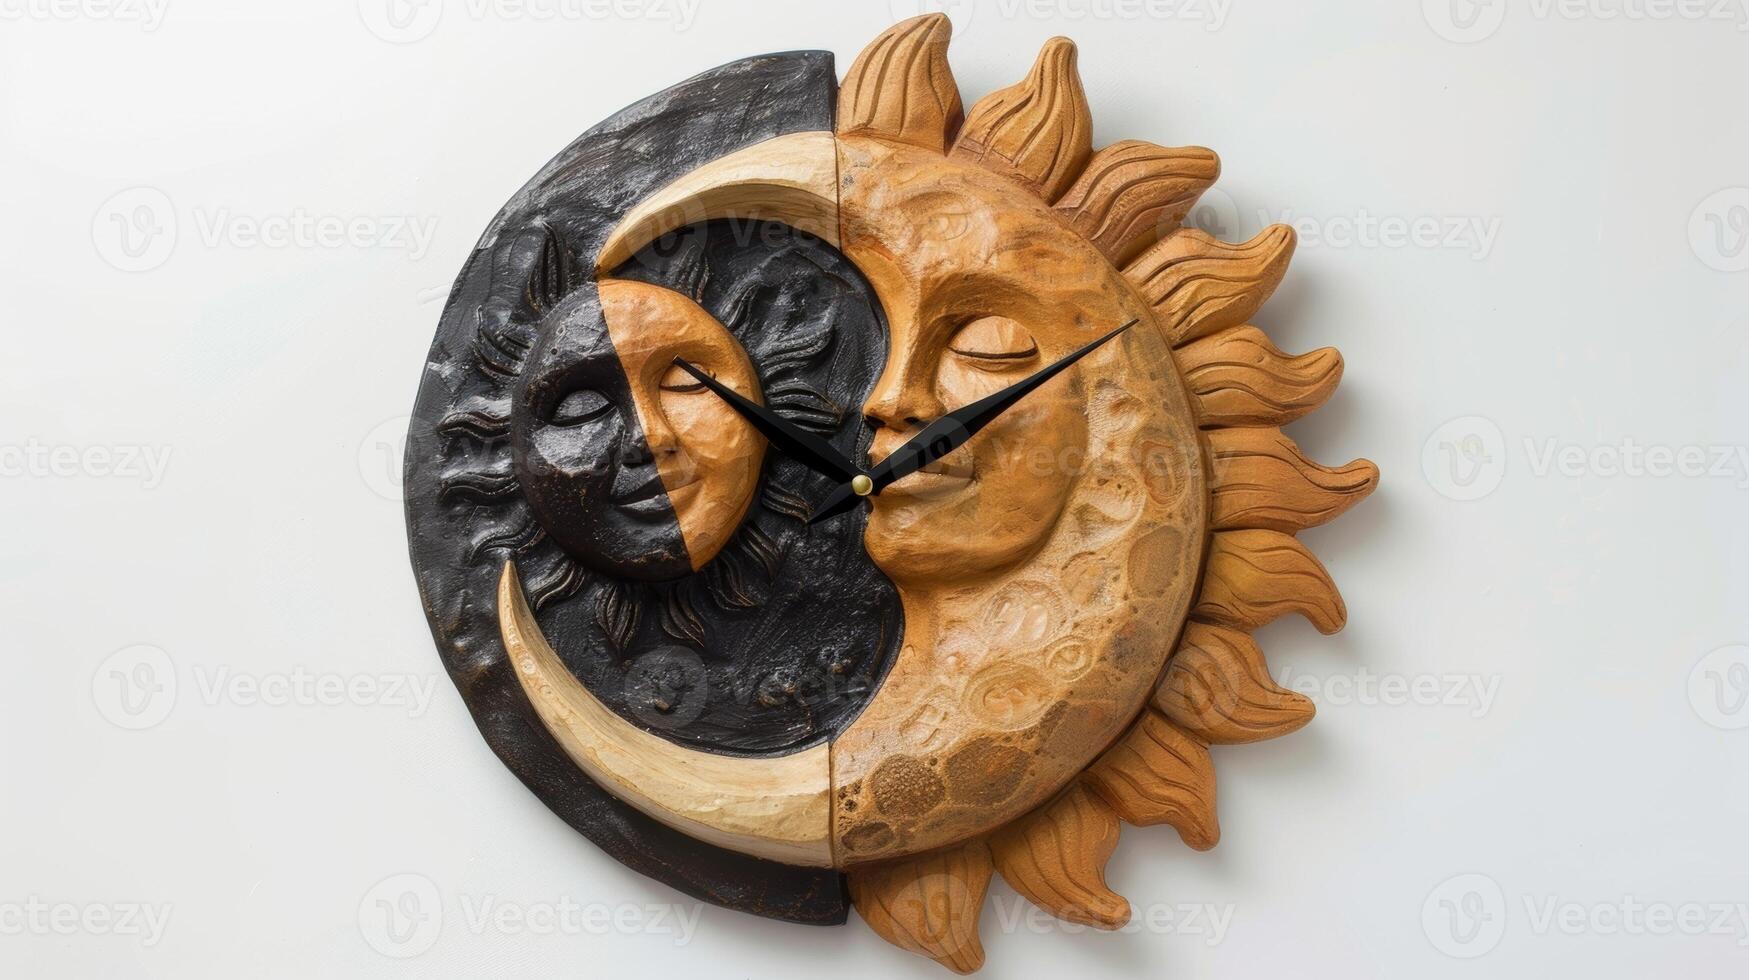 une argile mur l'horloge décoré avec une sculpté à la main Soleil et lune conception inspiré par le constant cycle de journée et nuit dans la nature. photo